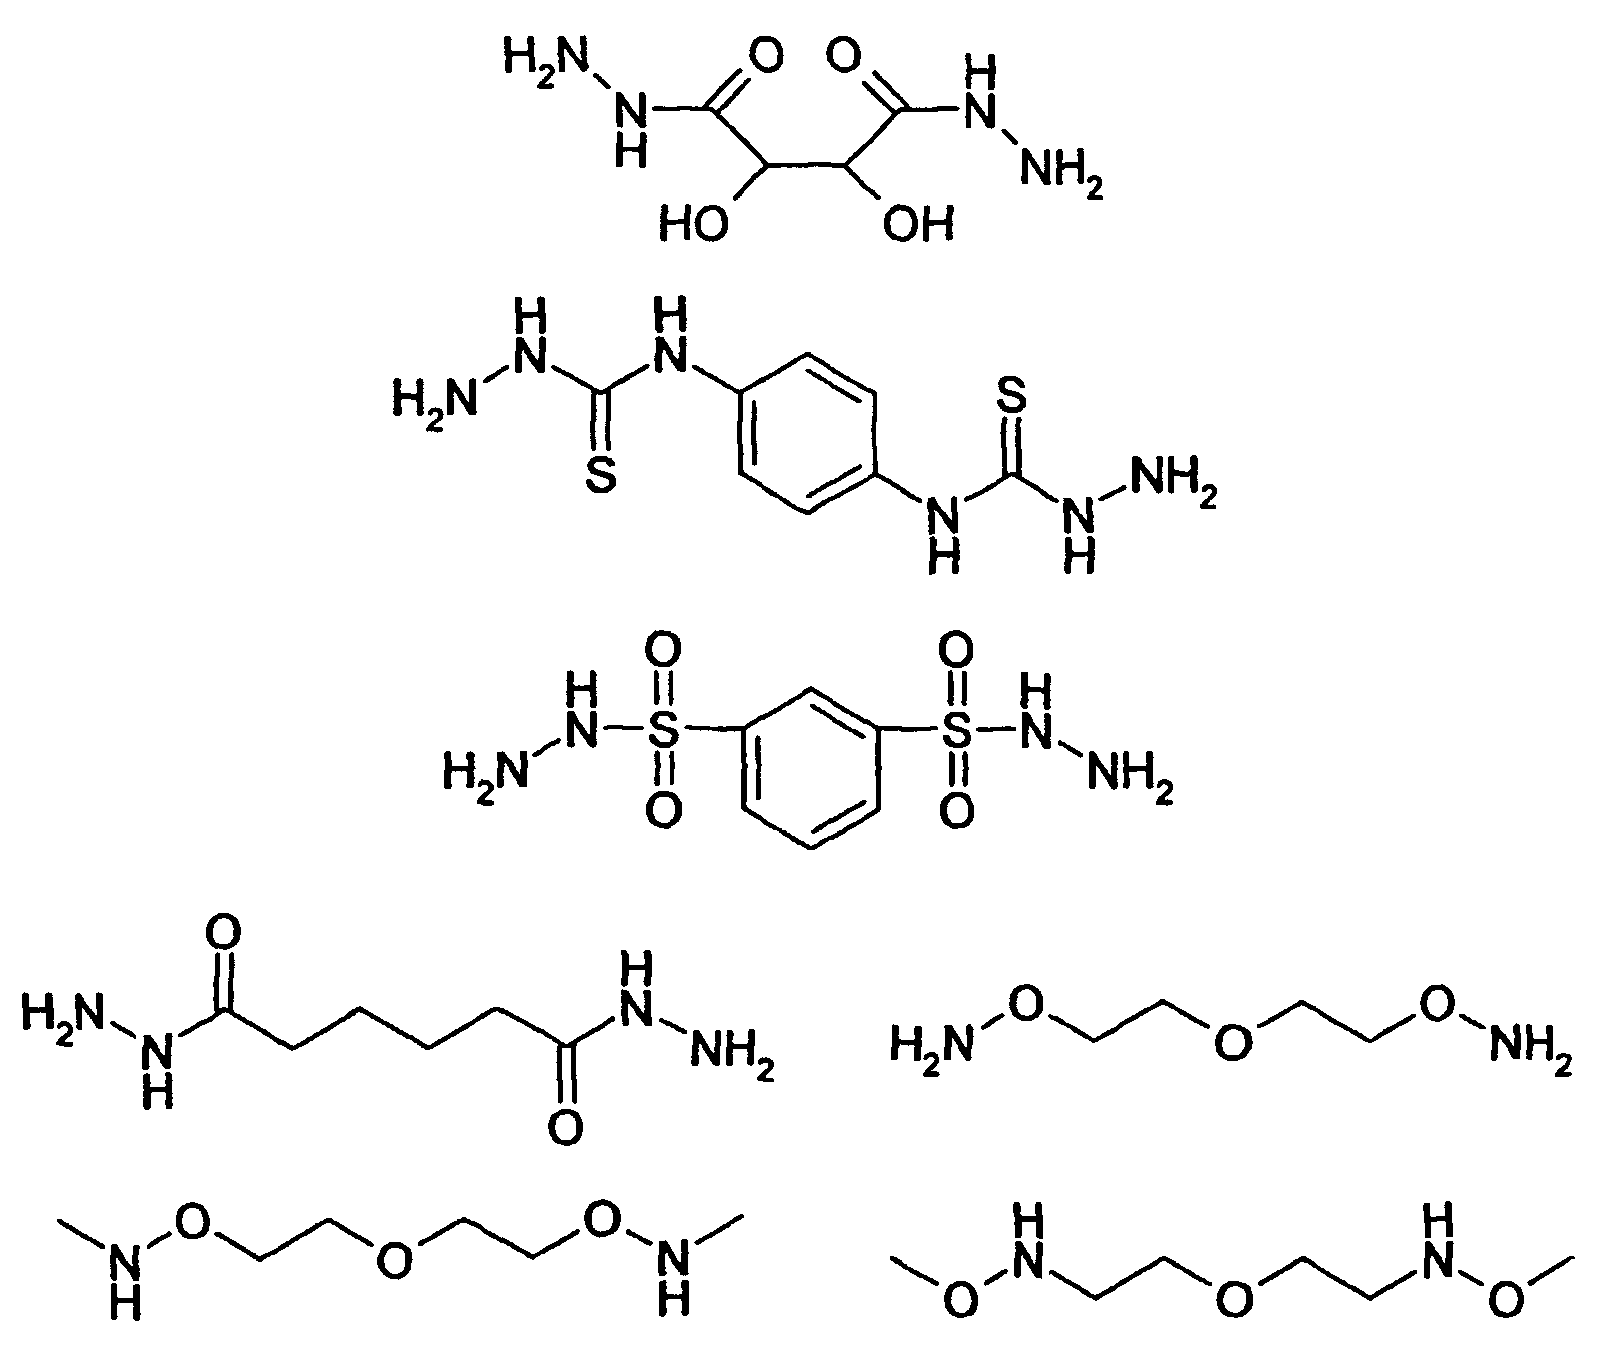 Полипептид рисунок. Полипептид формула. Полипептид получение. Форма молекулы полипептида. Изобразите в виде рисунка все стадии синтеза полипептида.